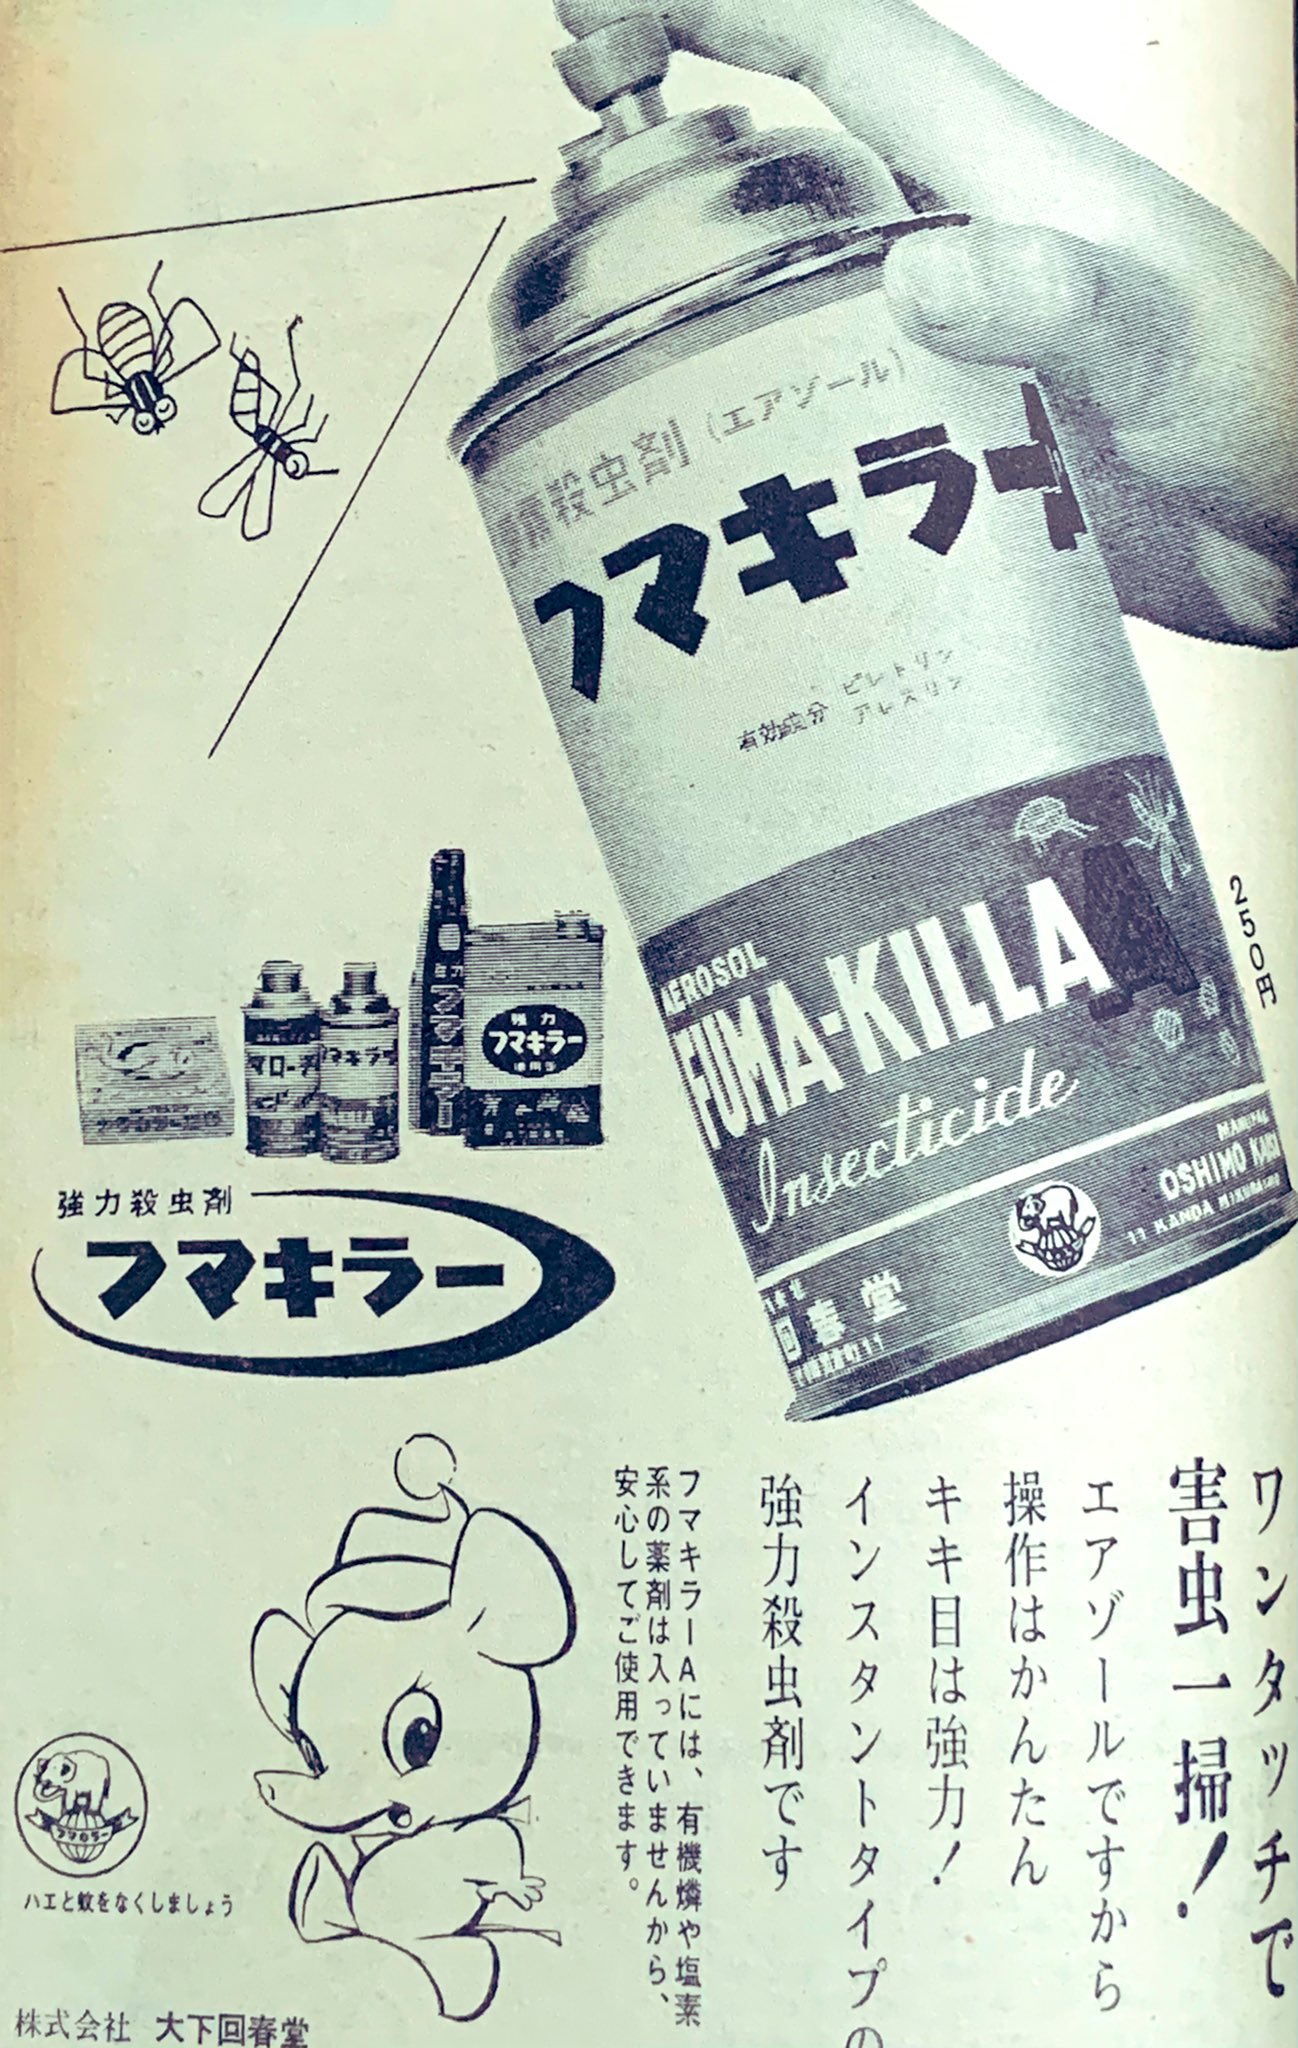 いちぢく 昭和30年代のイラストが可愛い広告 T Co H9hlws0e2c Twitter